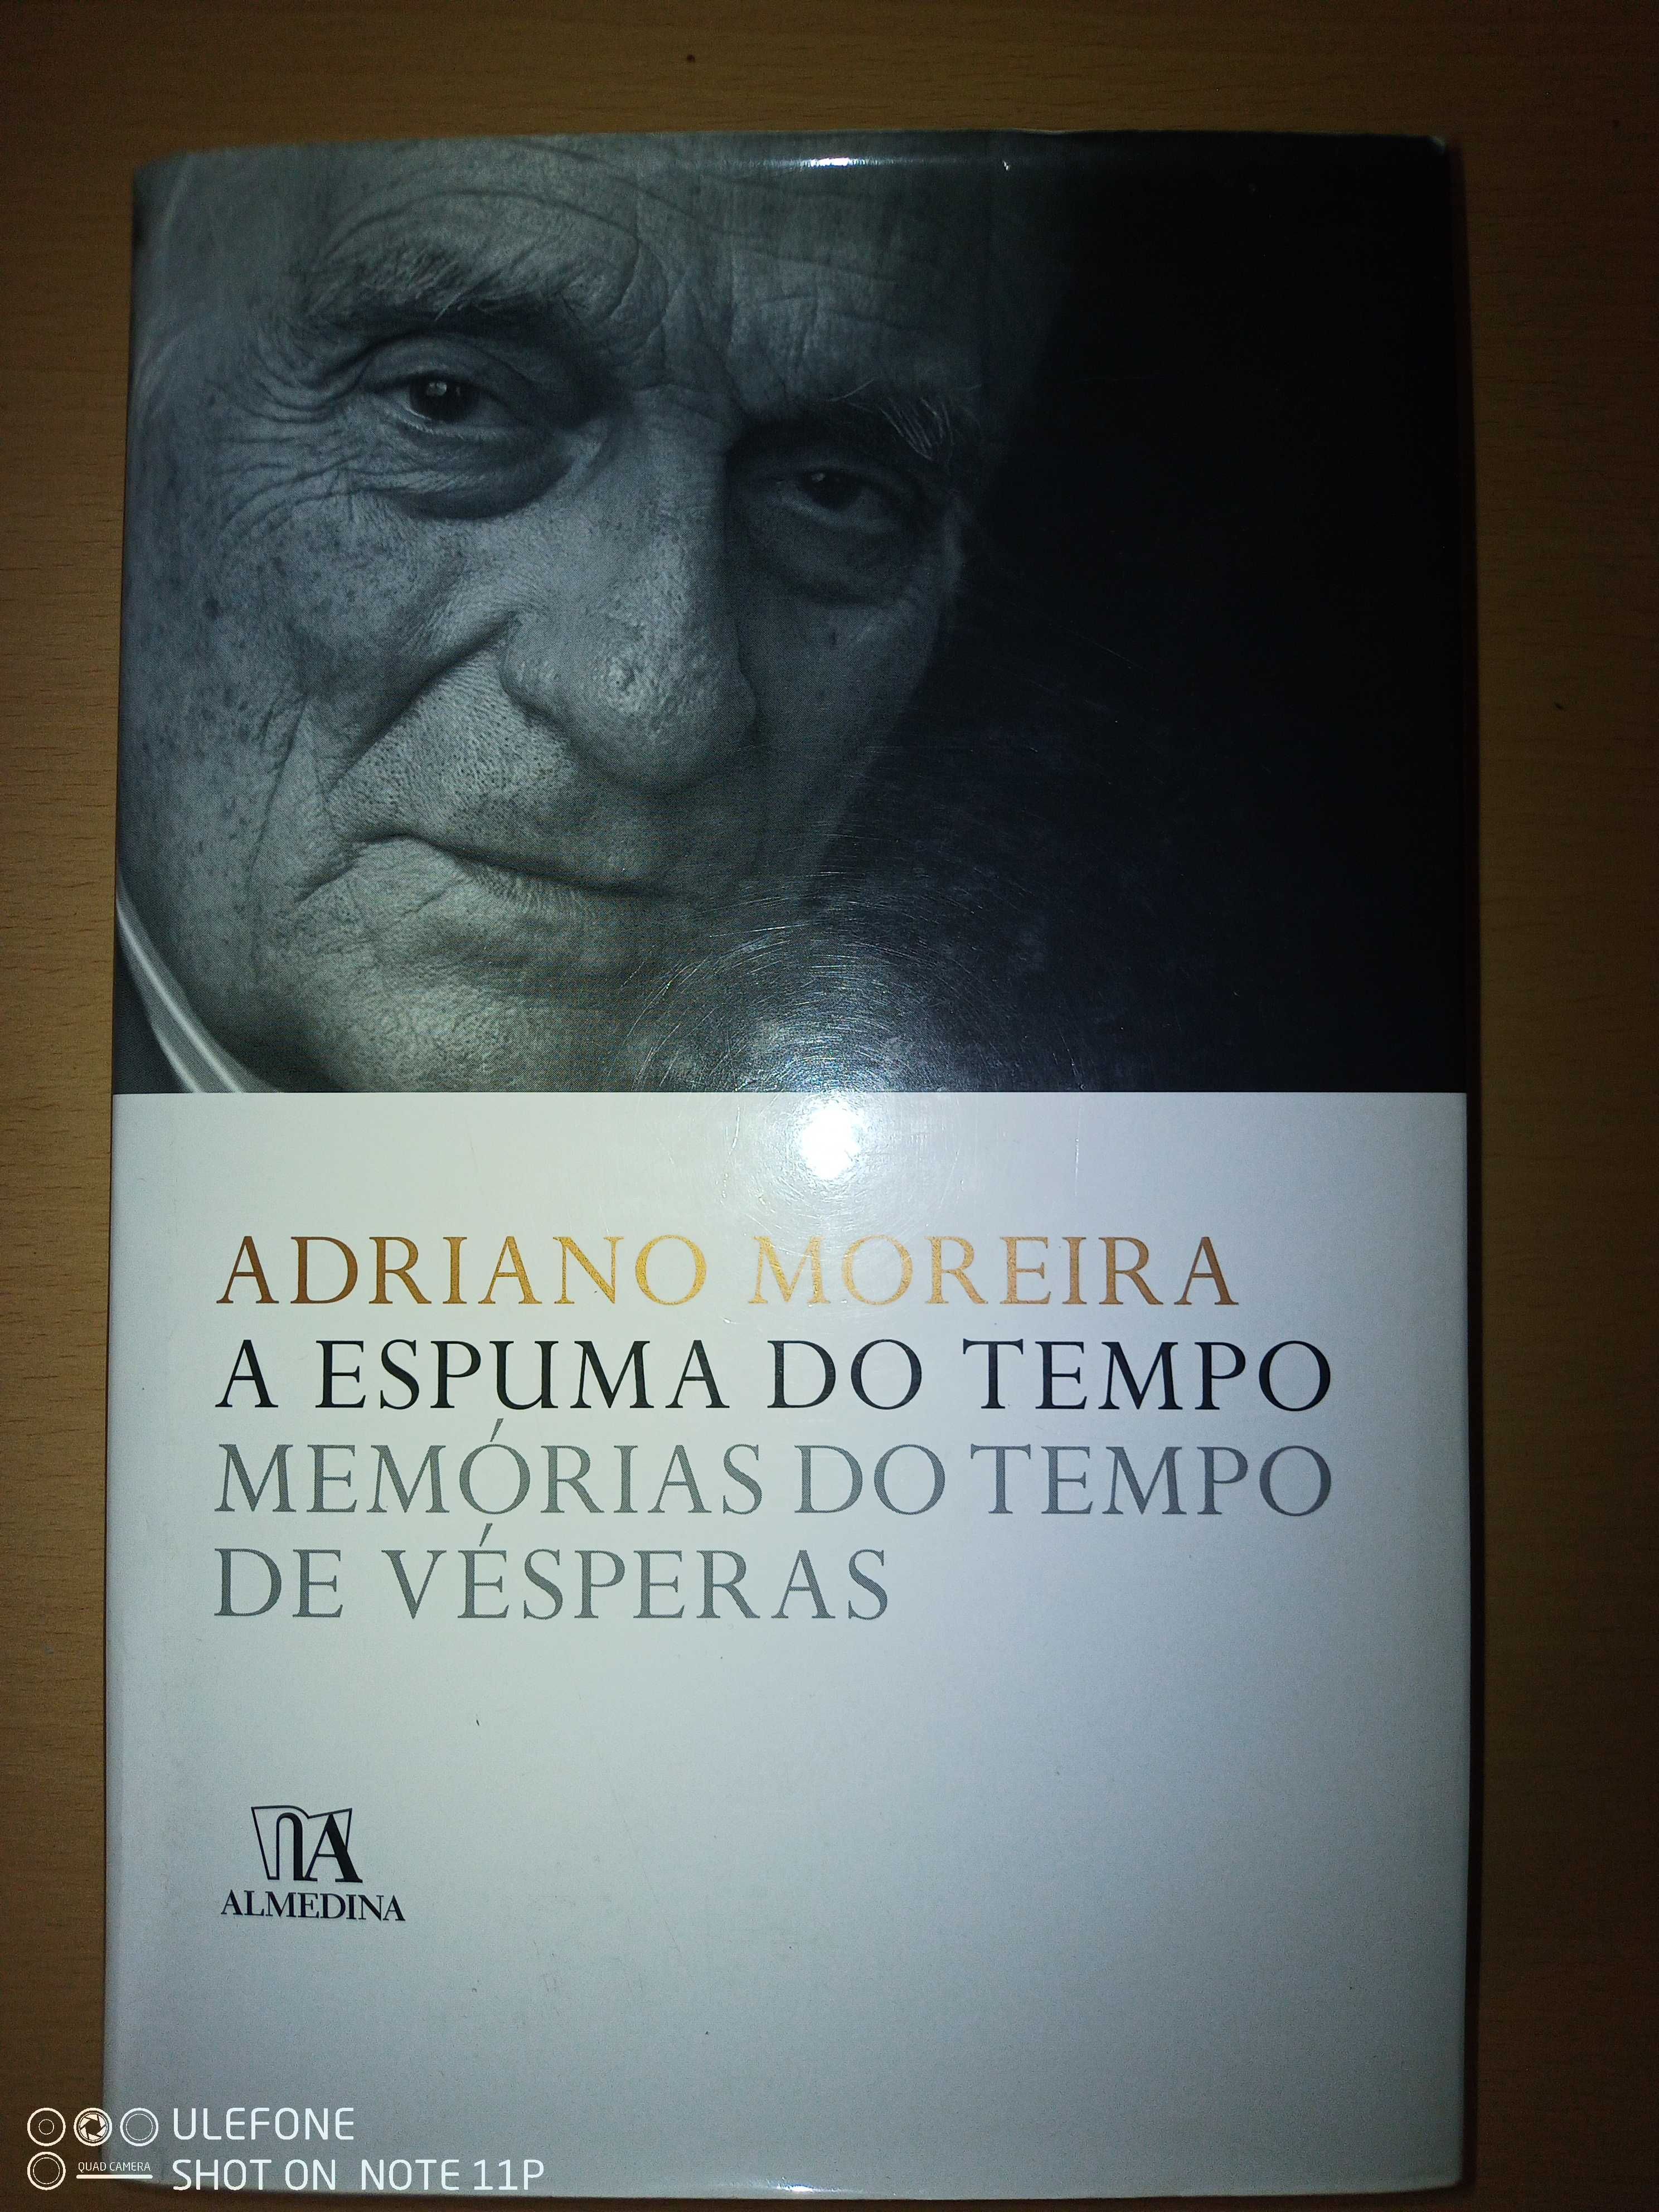 Adriano Moreira "A espuma do tempo"